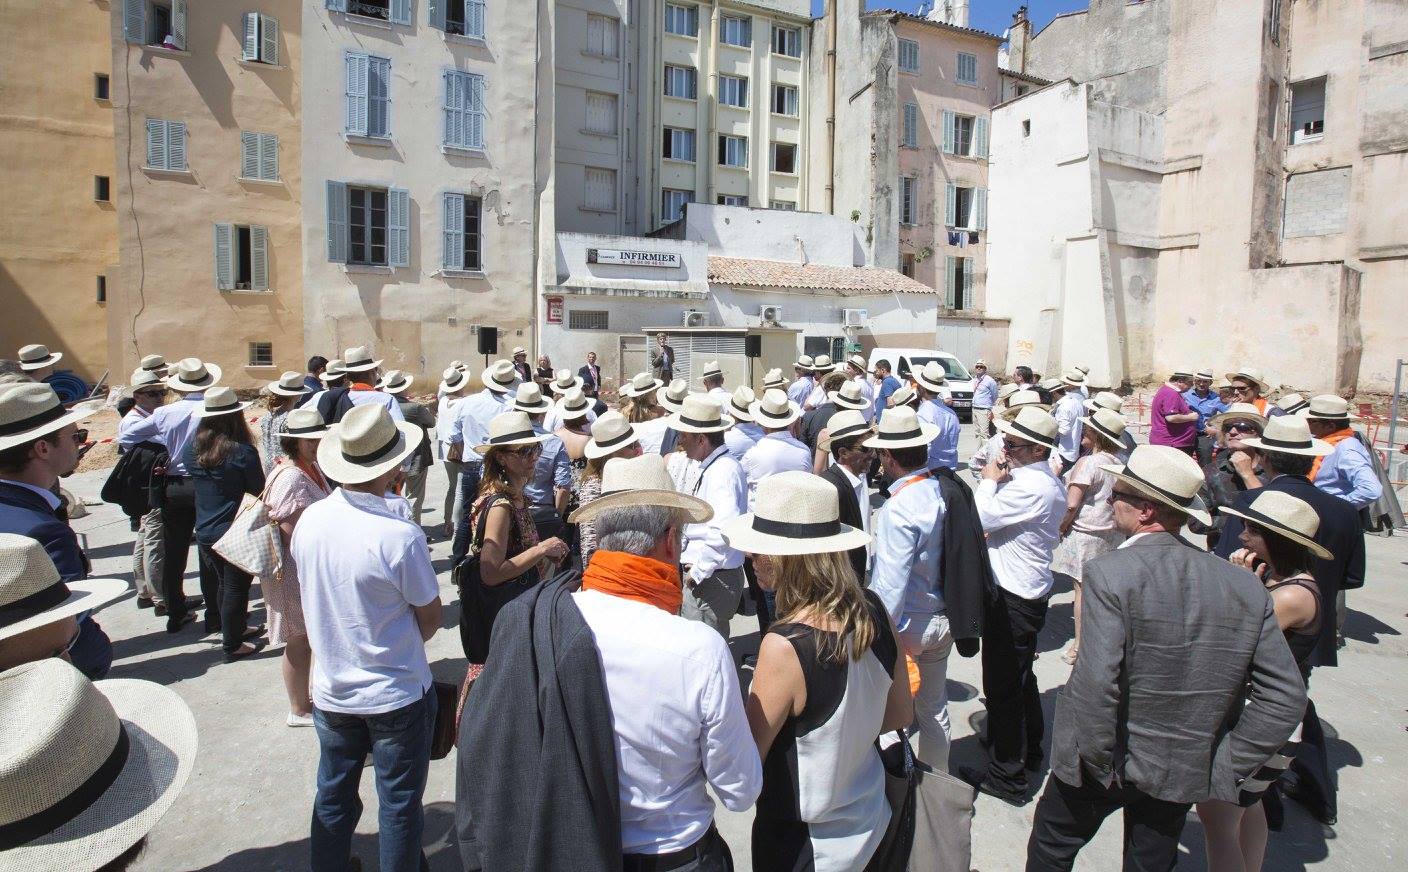 Cap au sud pour les professionnels de l'immobilier (La Provence, 5 juin 2015)